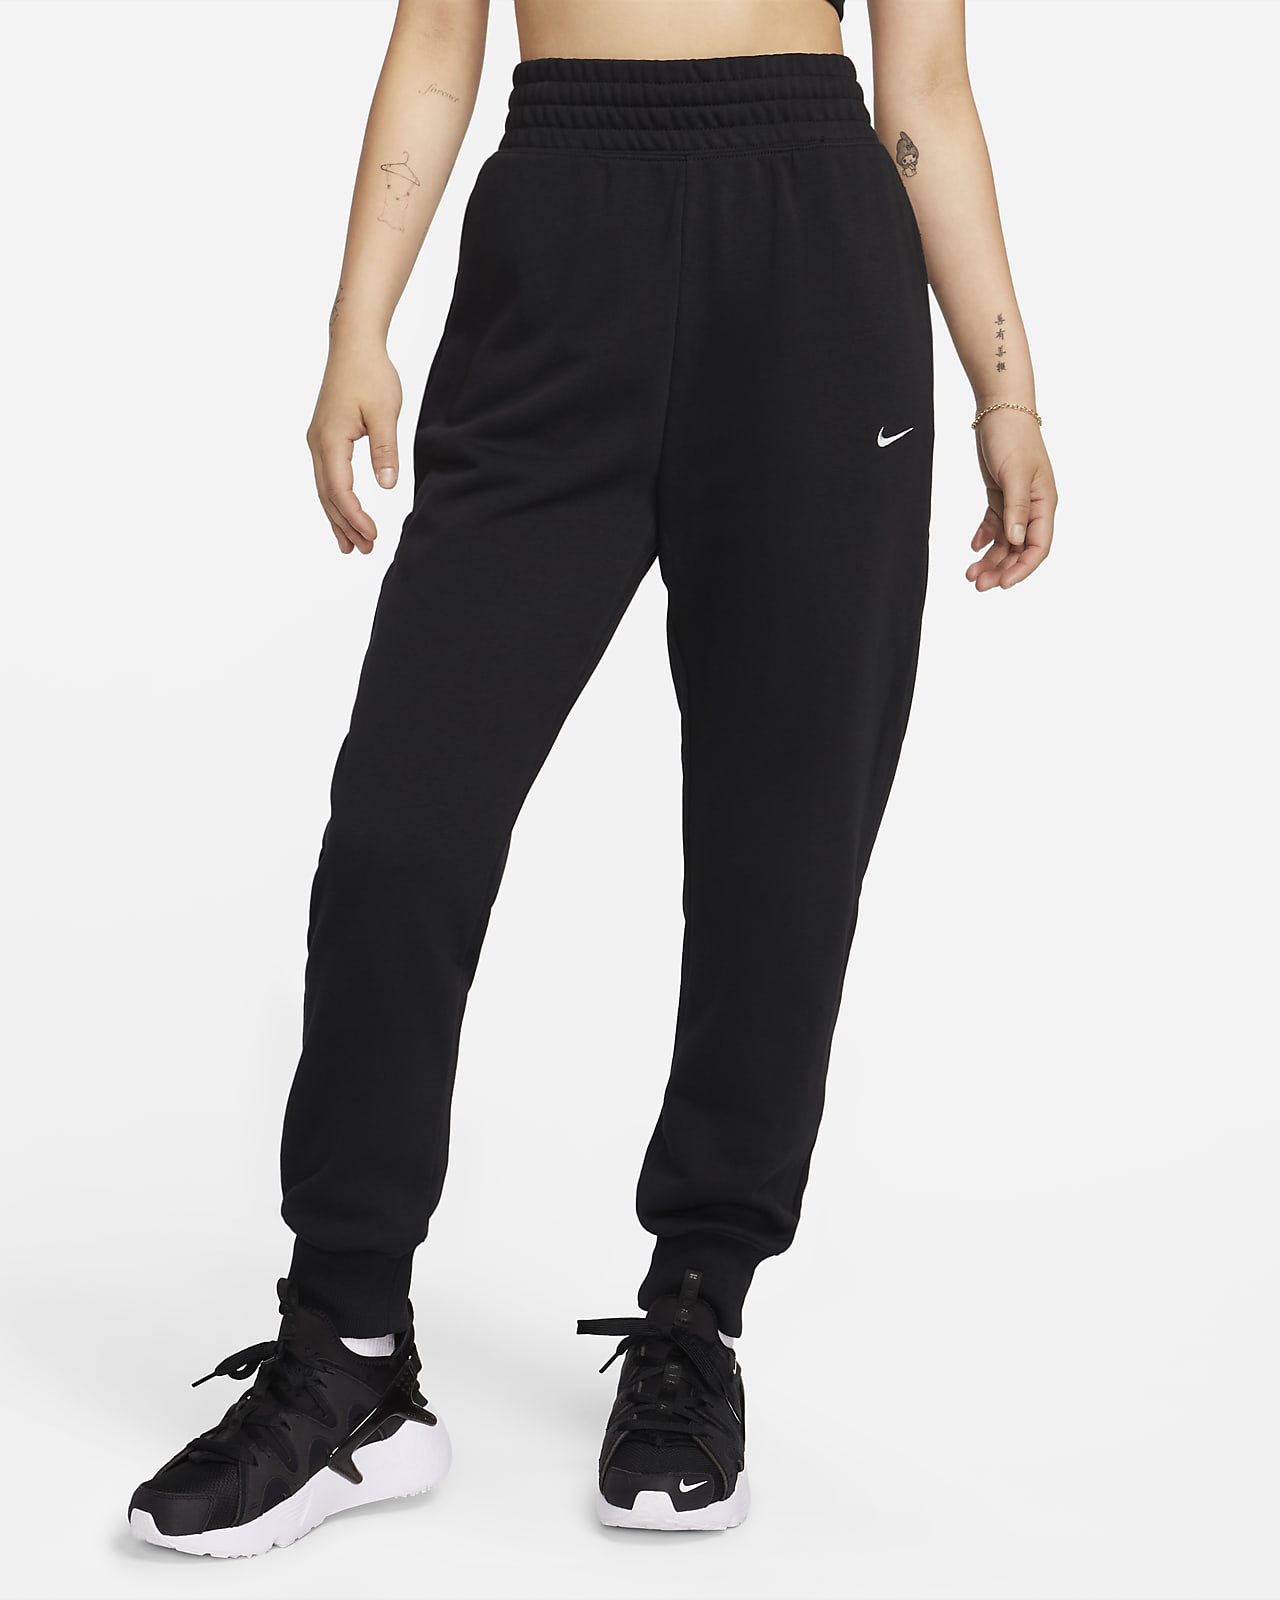 Nike Sportswear 女款高腰法國毛圈布長褲